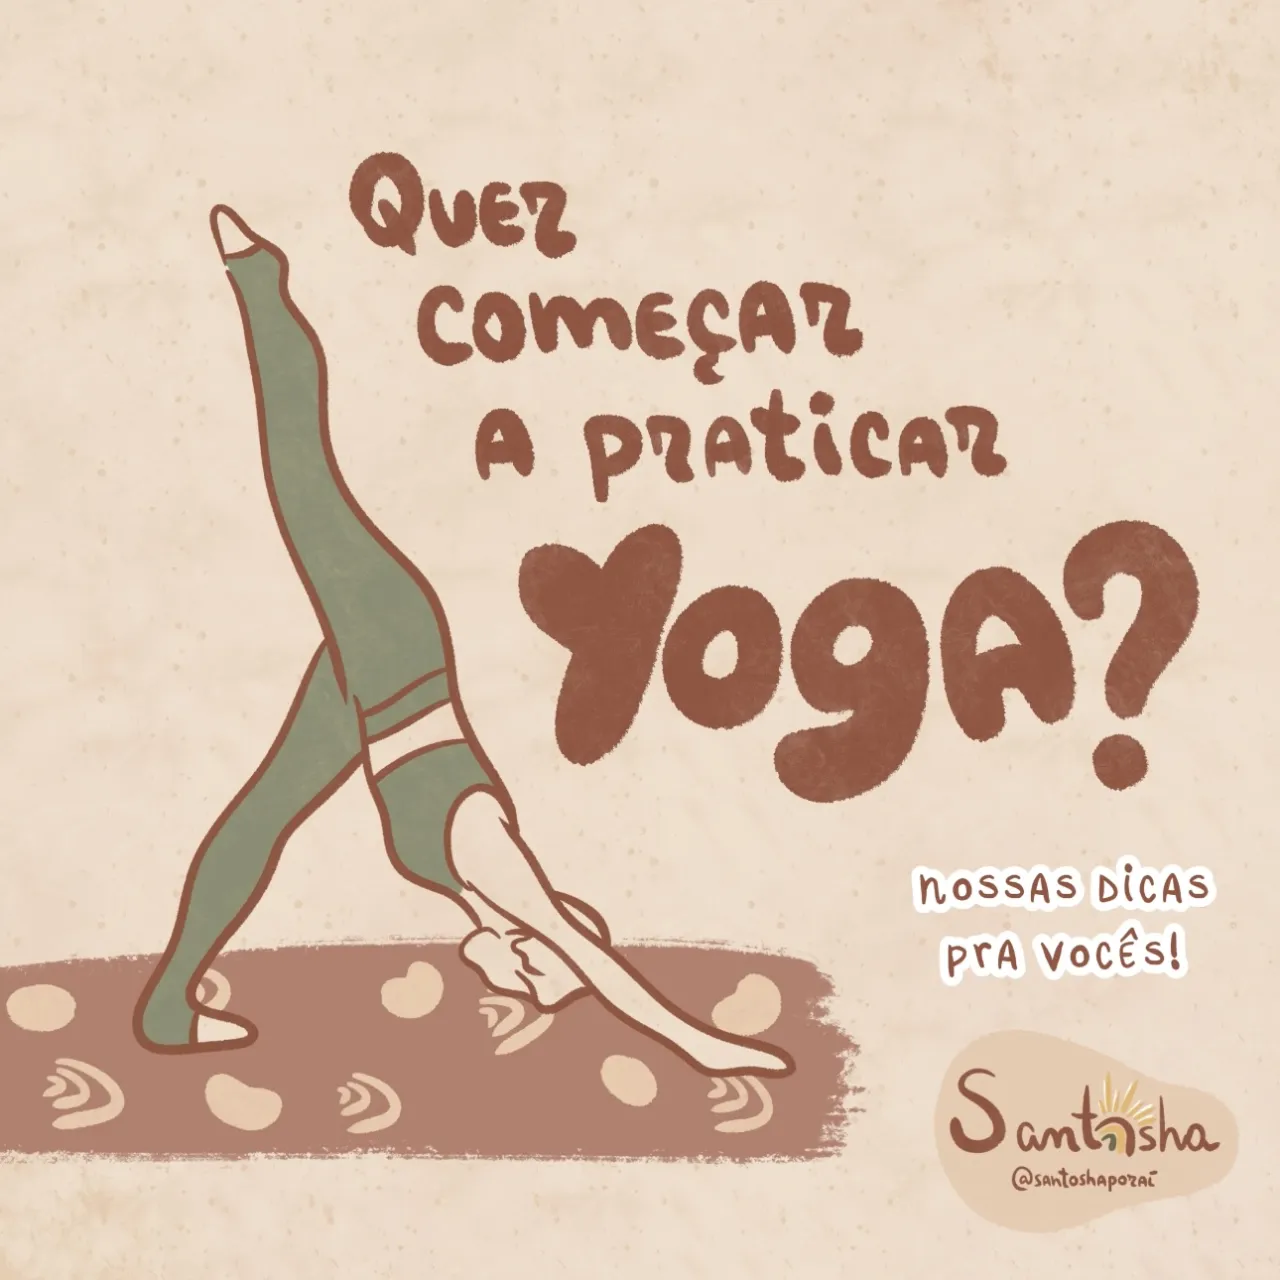 Quer começar a praticar yoga?